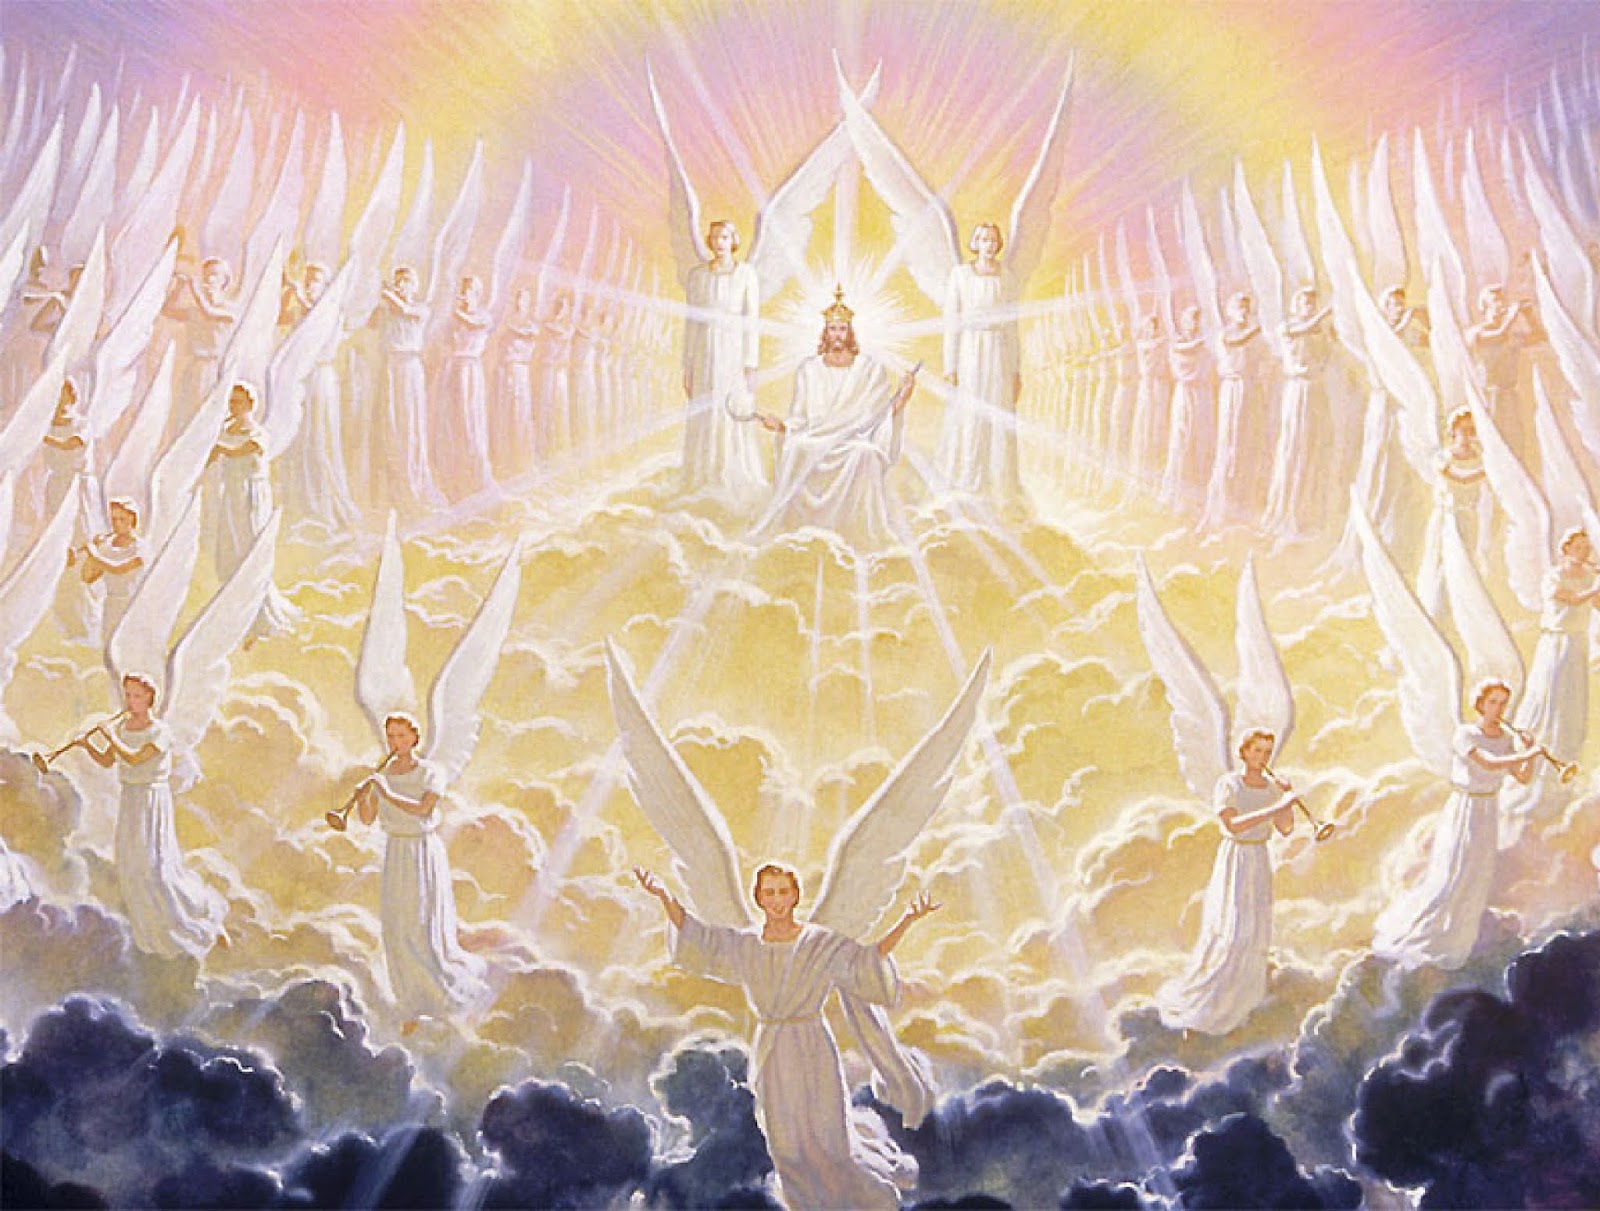 Ангелы святого человека. Второе происшествие Иисуса Христа. Второе пришествие Иисуса Христа. Ангелы воинство небесное. Иисус Христос царство небесное.